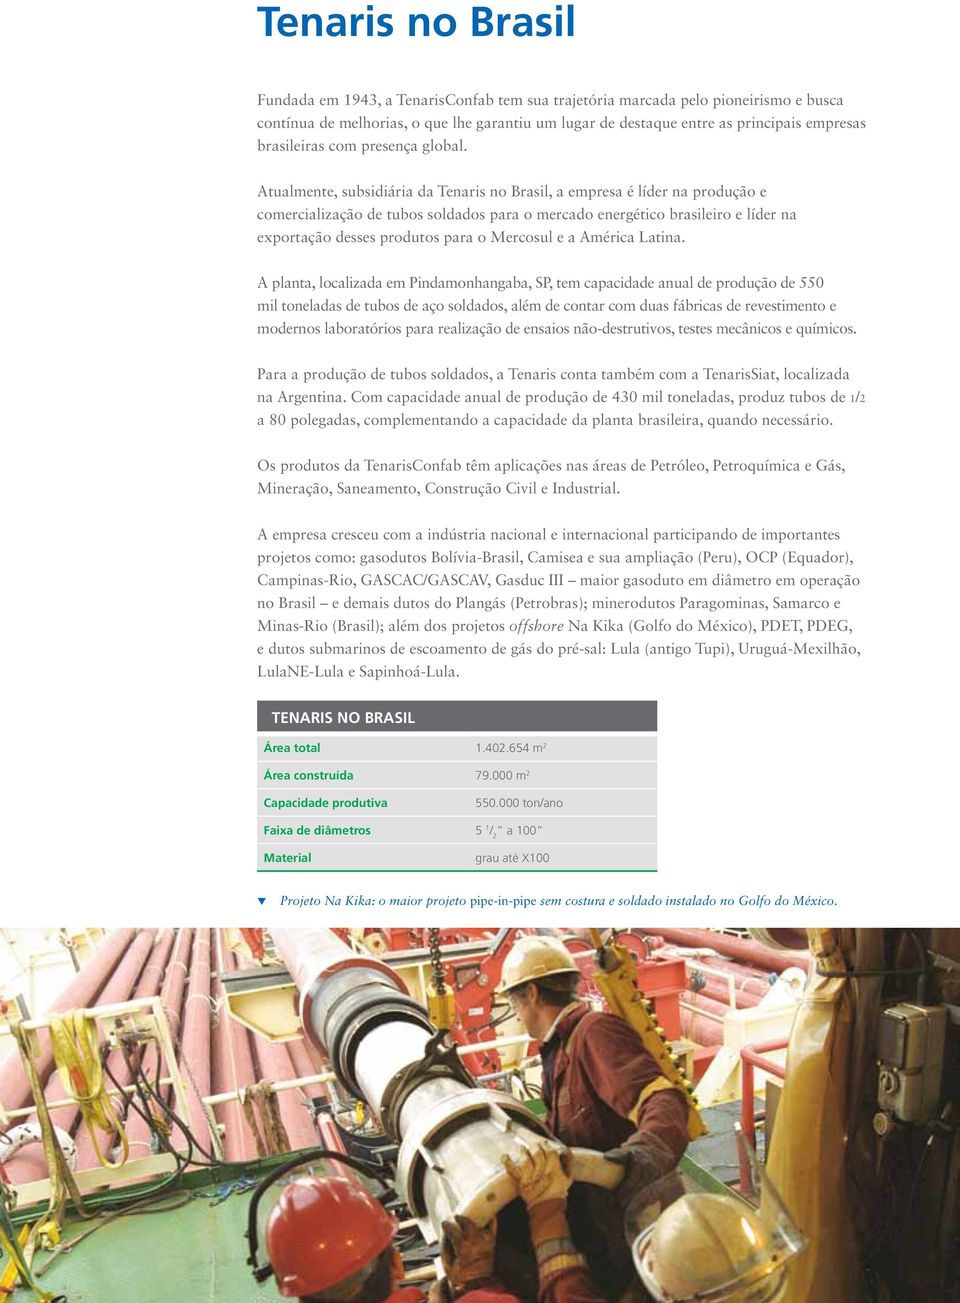 Atualmente, subsidiária da Tenaris no Brasil, a empresa é líder na produção e comercialização de tubos soldados para o mercado energético brasileiro e líder na exportação desses produtos para o